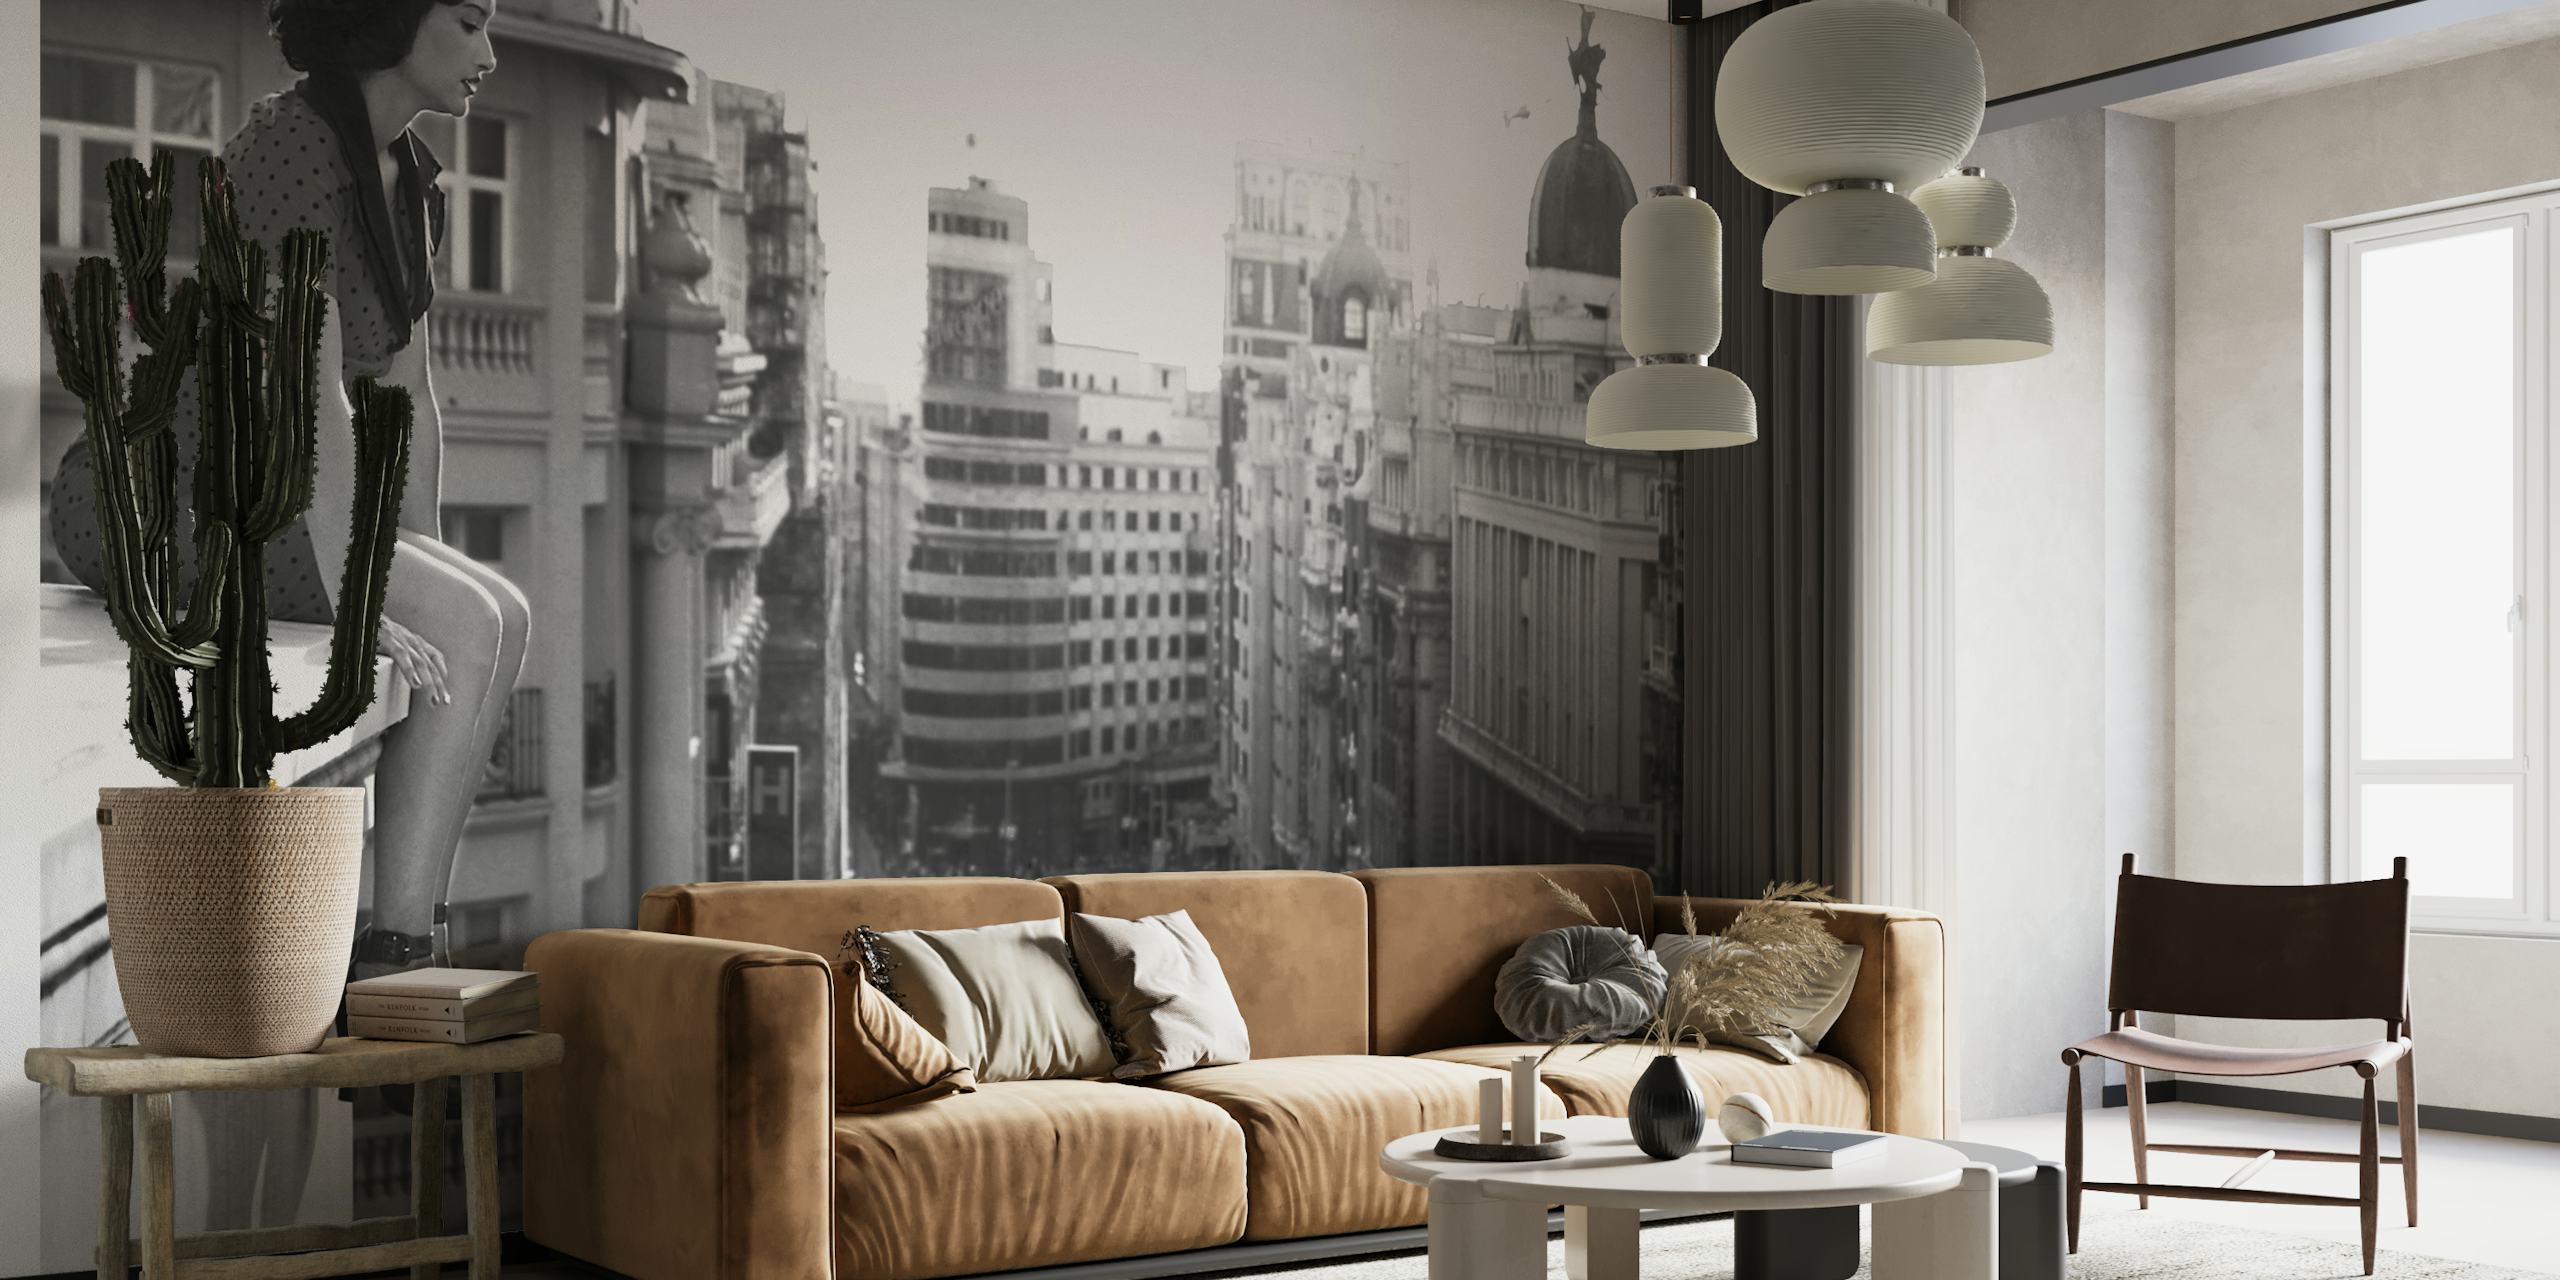 Peinture murale en noir et blanc représentant un paysage urbain illustrant l'énergie urbaine et les bâtiments historiques de Madrid.